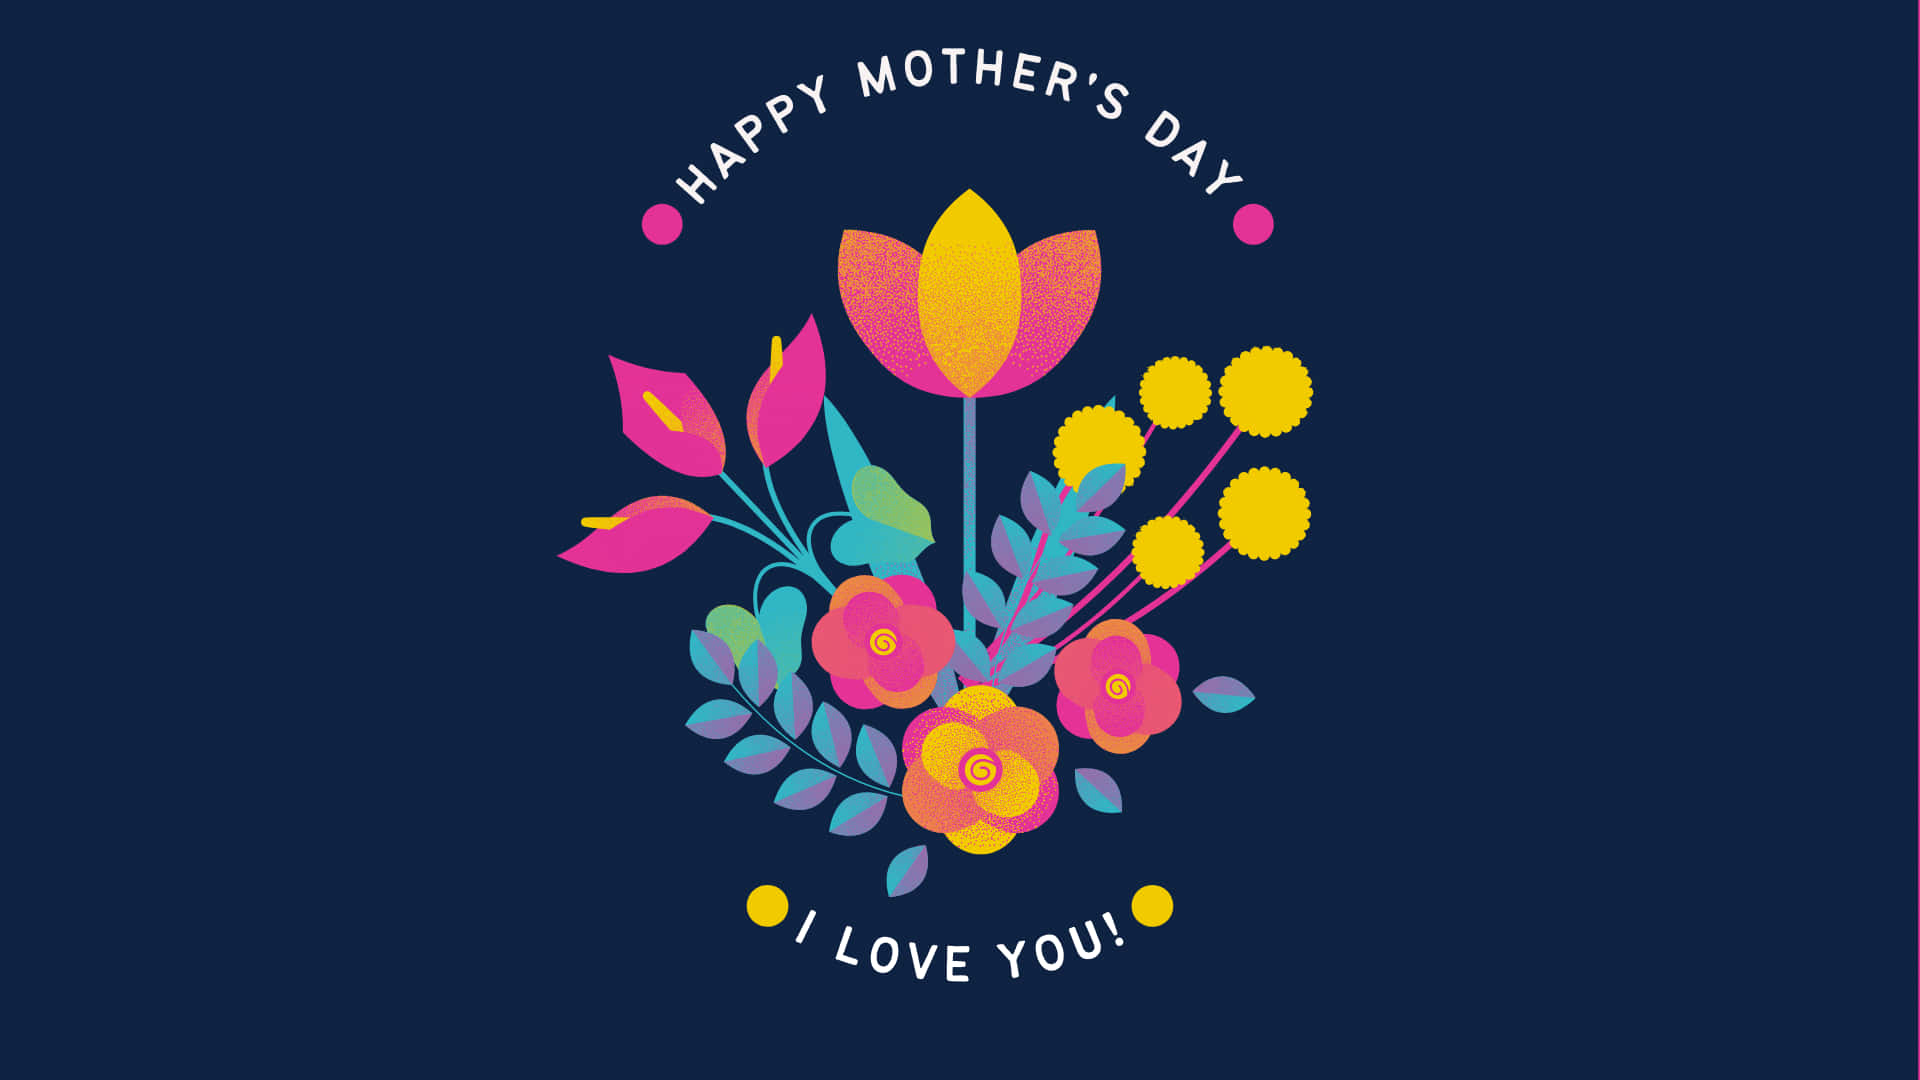 Fejr denne mors dag med kærlighed! Wallpaper